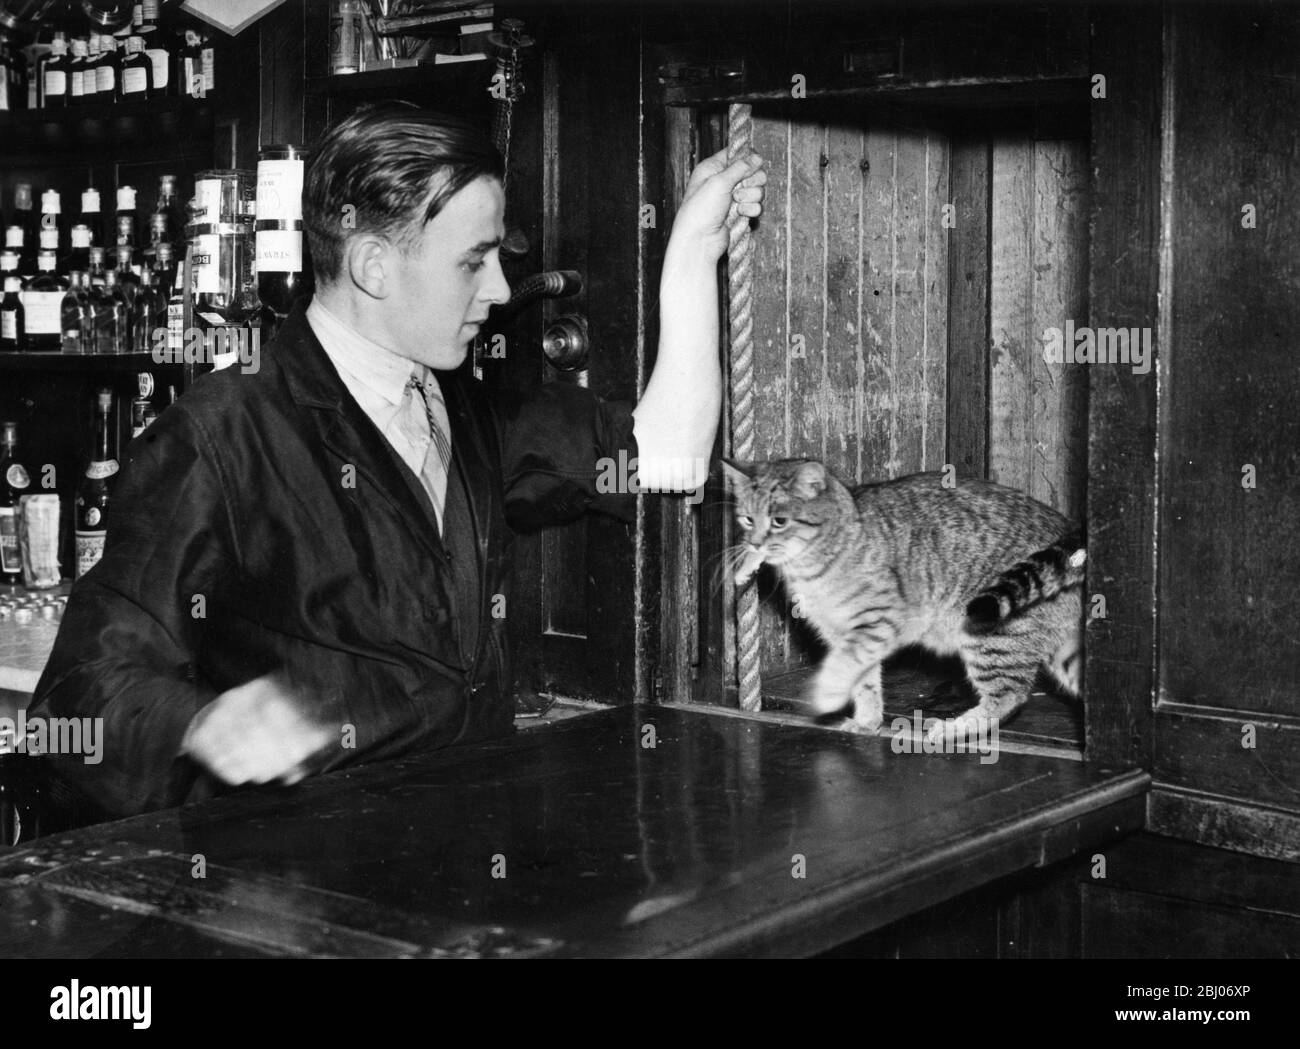 Il gatto residente prende un ascensore al bar. Foto Stock